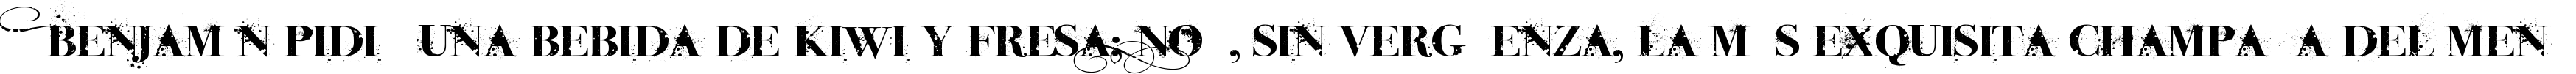 Пример написания шрифтом iNked God текста на испанском